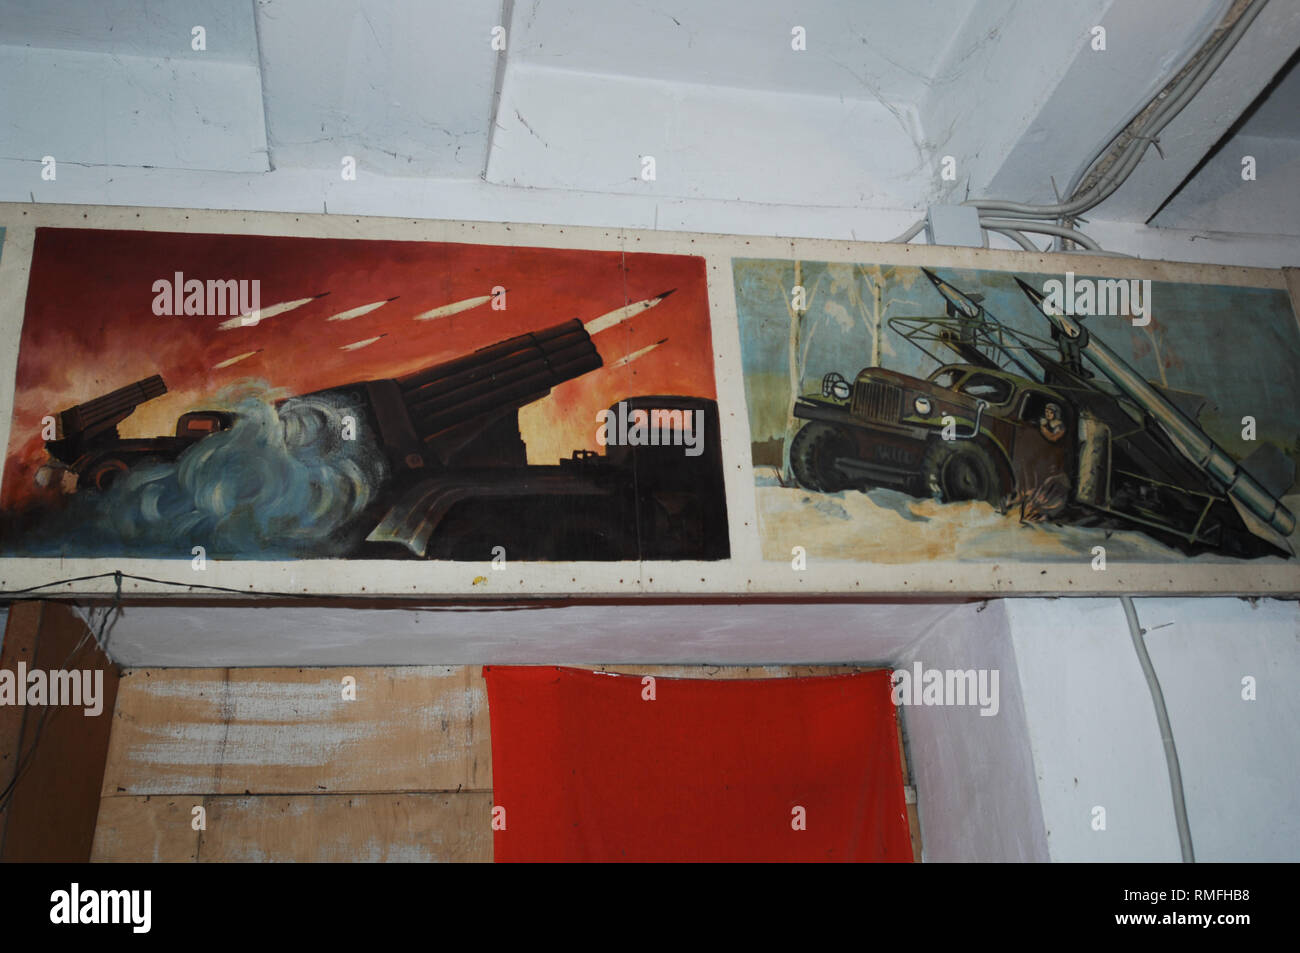 Januar 1, 2006 - Donezk Donezk Volksrepublik (DPR) D, Ukraine - Gemälde an einer ex-sowjetischen Krieges Luftschutzbunker aus einer früheren Besetzung gesehen. Der Krieg zwischen der ukrainischen Armee und die Soldaten der Donezk Volksrepublik hat das Leben von 12.000 Menschen und diejenigen, die vertrieben wurden mehr als eine Million. Das im Jahr 2014 eskaliert. Trotz eines Waffenstillstandes im Ort, es ist offensichtlich, dass der Tod immer noch Auftritt von vorwiegend, Sniper, Mörtel und Minen. den Bau von Schützengräben auf beiden Seiten von Niemandsland, (oft nur 100 m auseinander) gewährleistet eine statische noch aggressiver Konfrontation. Die Stockfoto